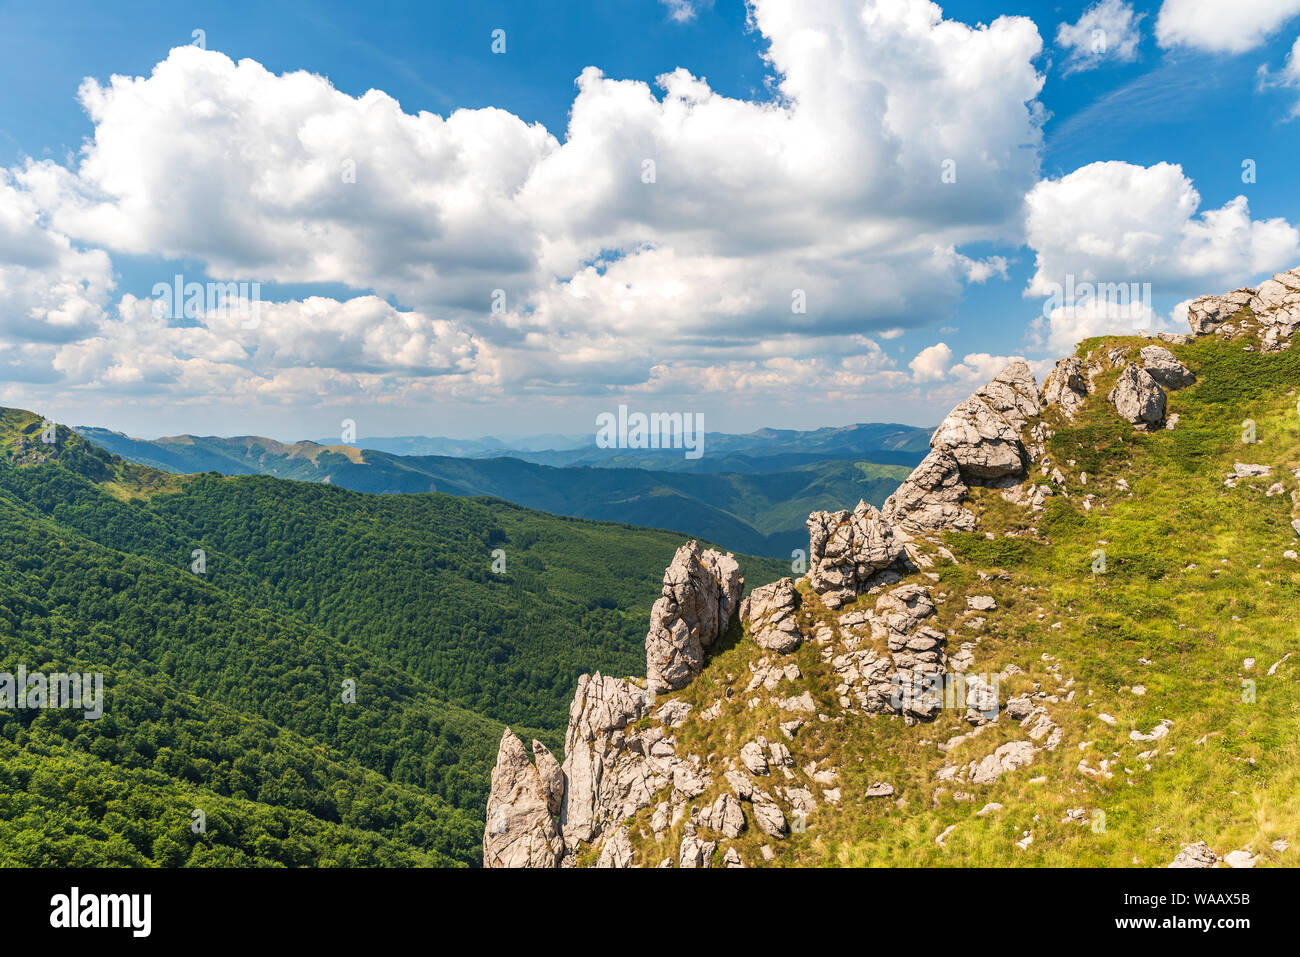 Estate in Central Balkan parco nazionale nella vecchia montagna ( Stara Planina ), Bulgaria. Panoramica Foto mozzafiato. Foto Stock